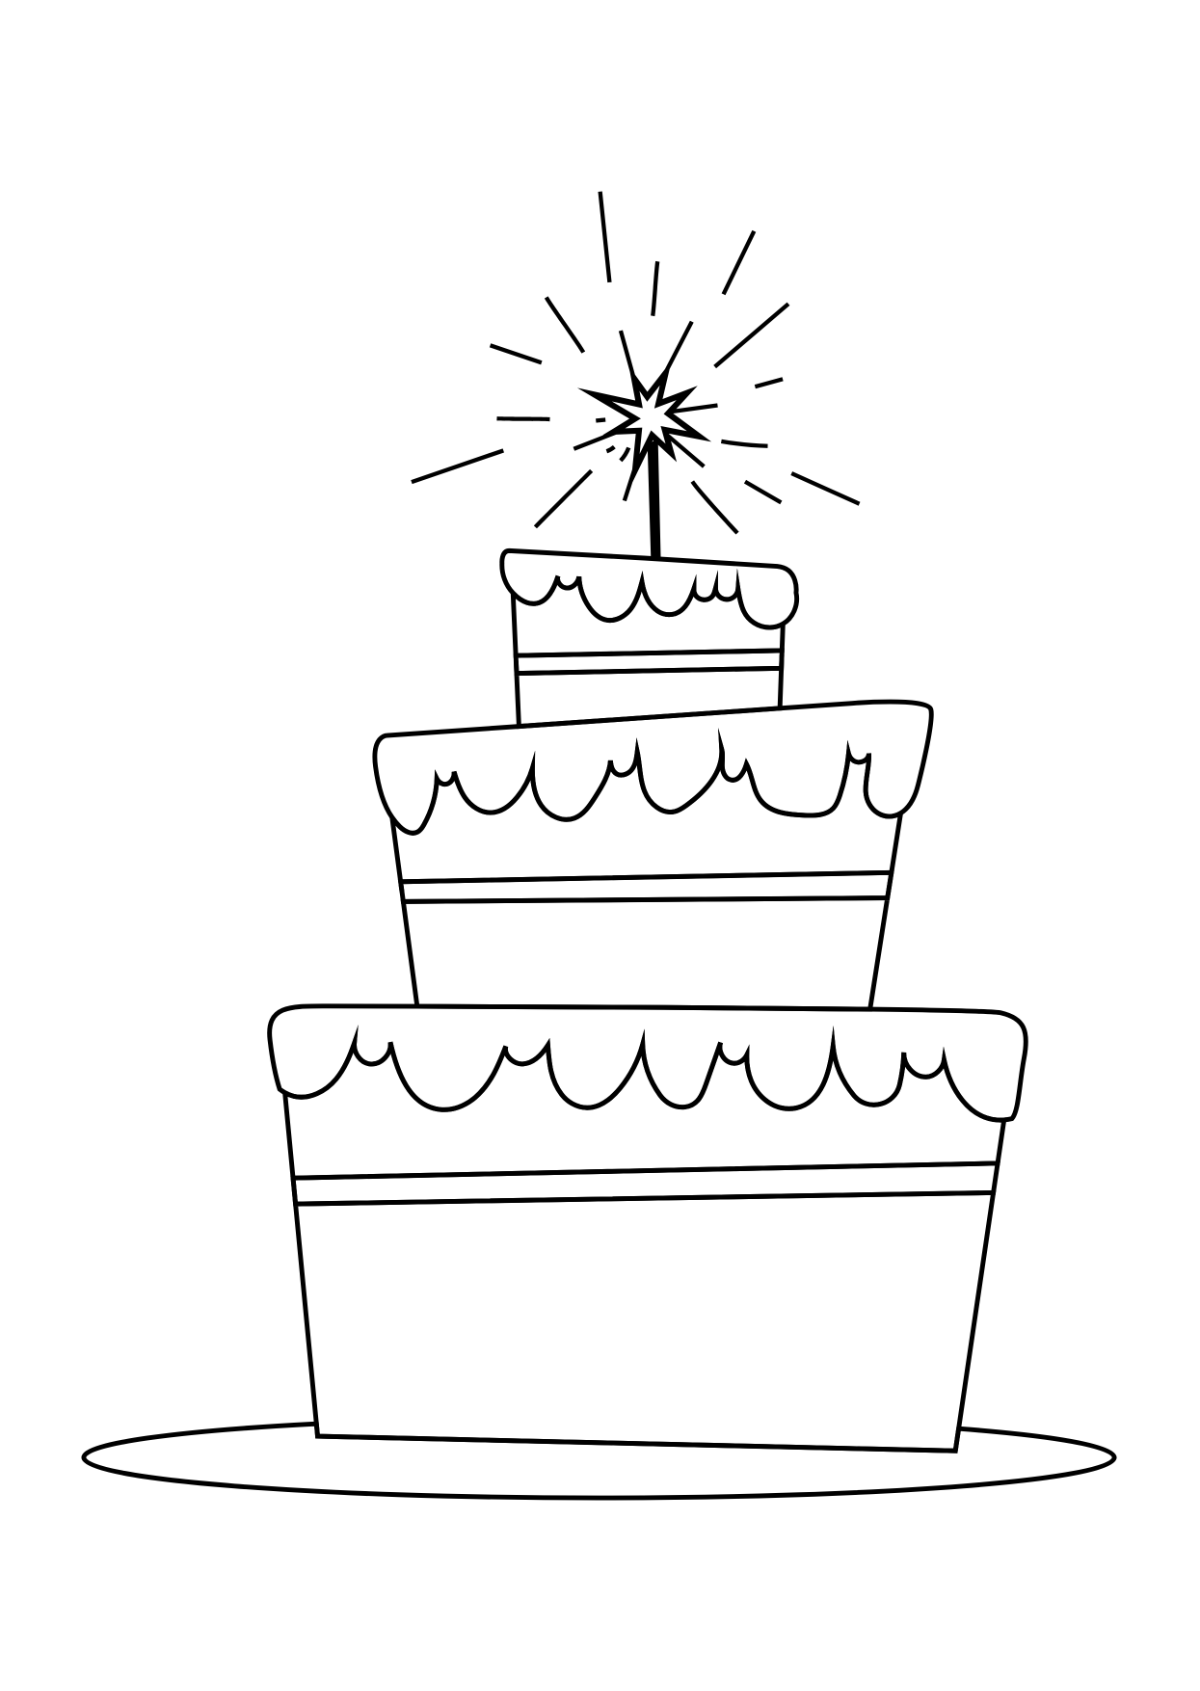 Cake - Drawing Skill